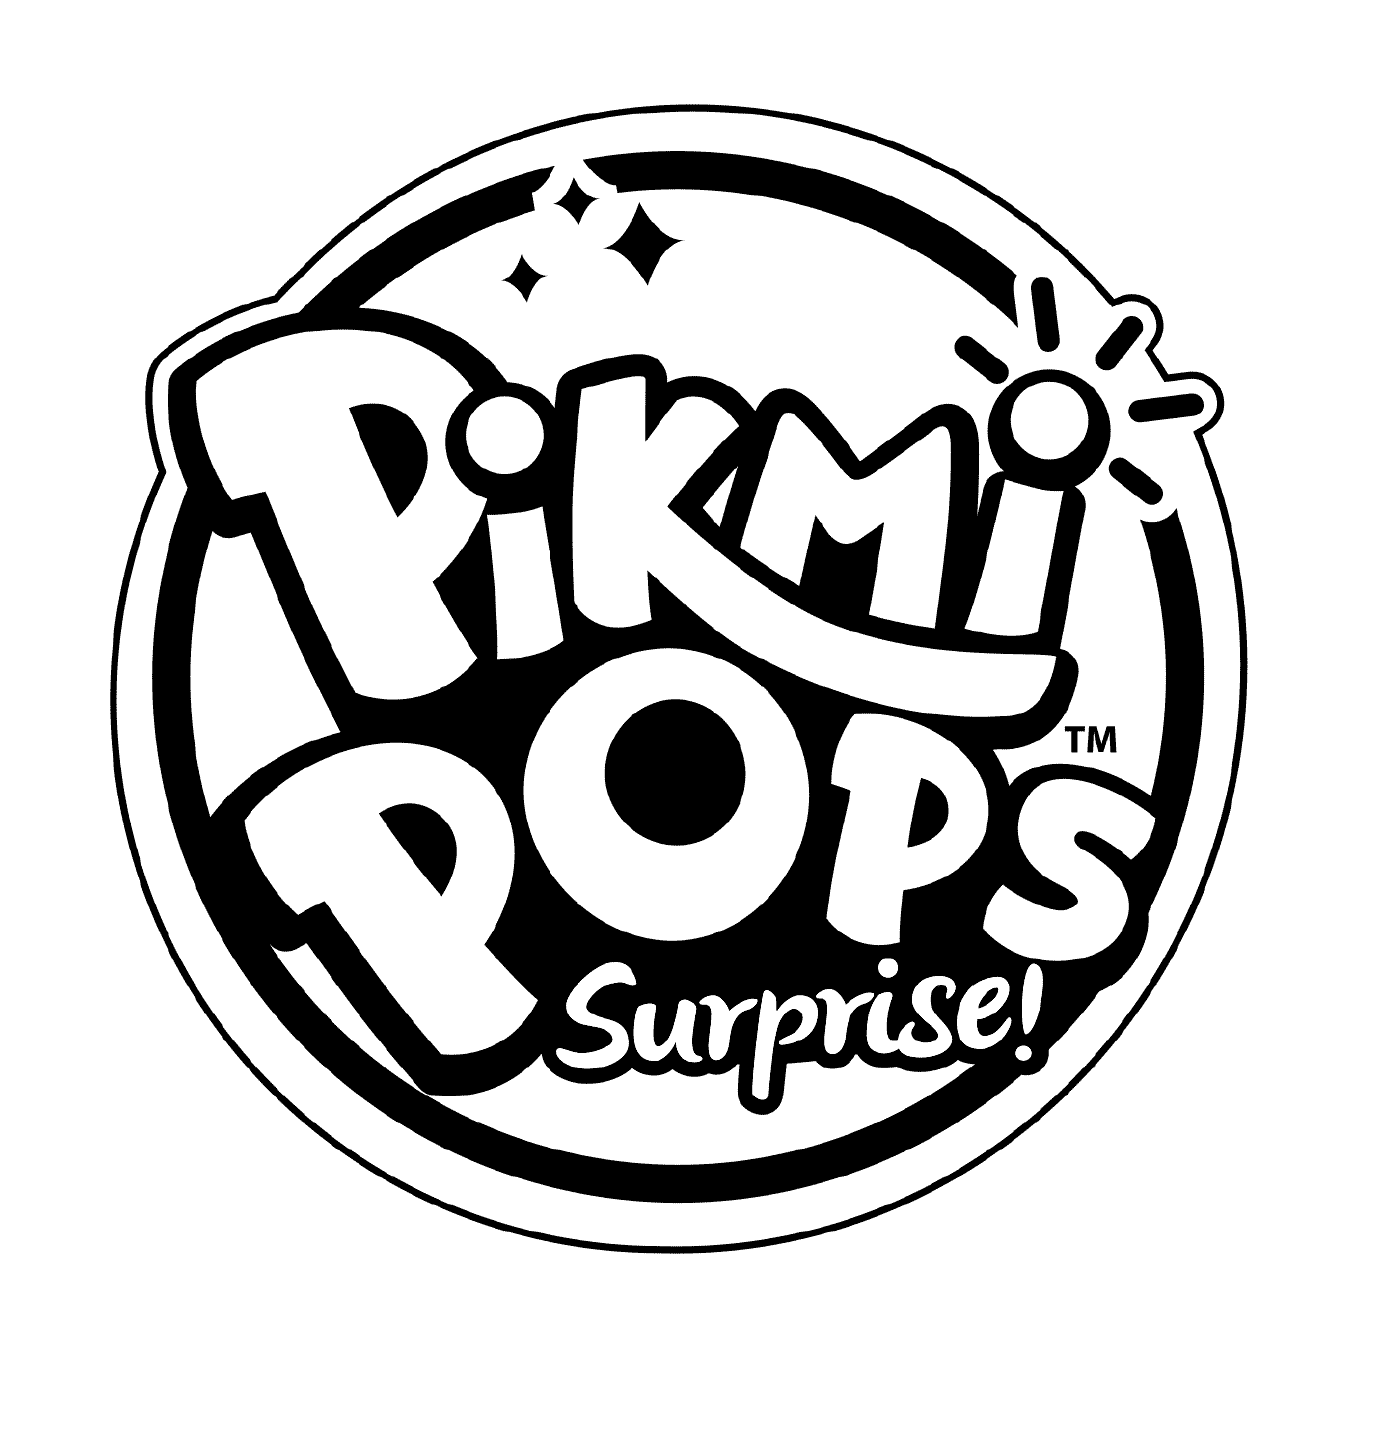  Färbung des Pikmi Pops-Logos 